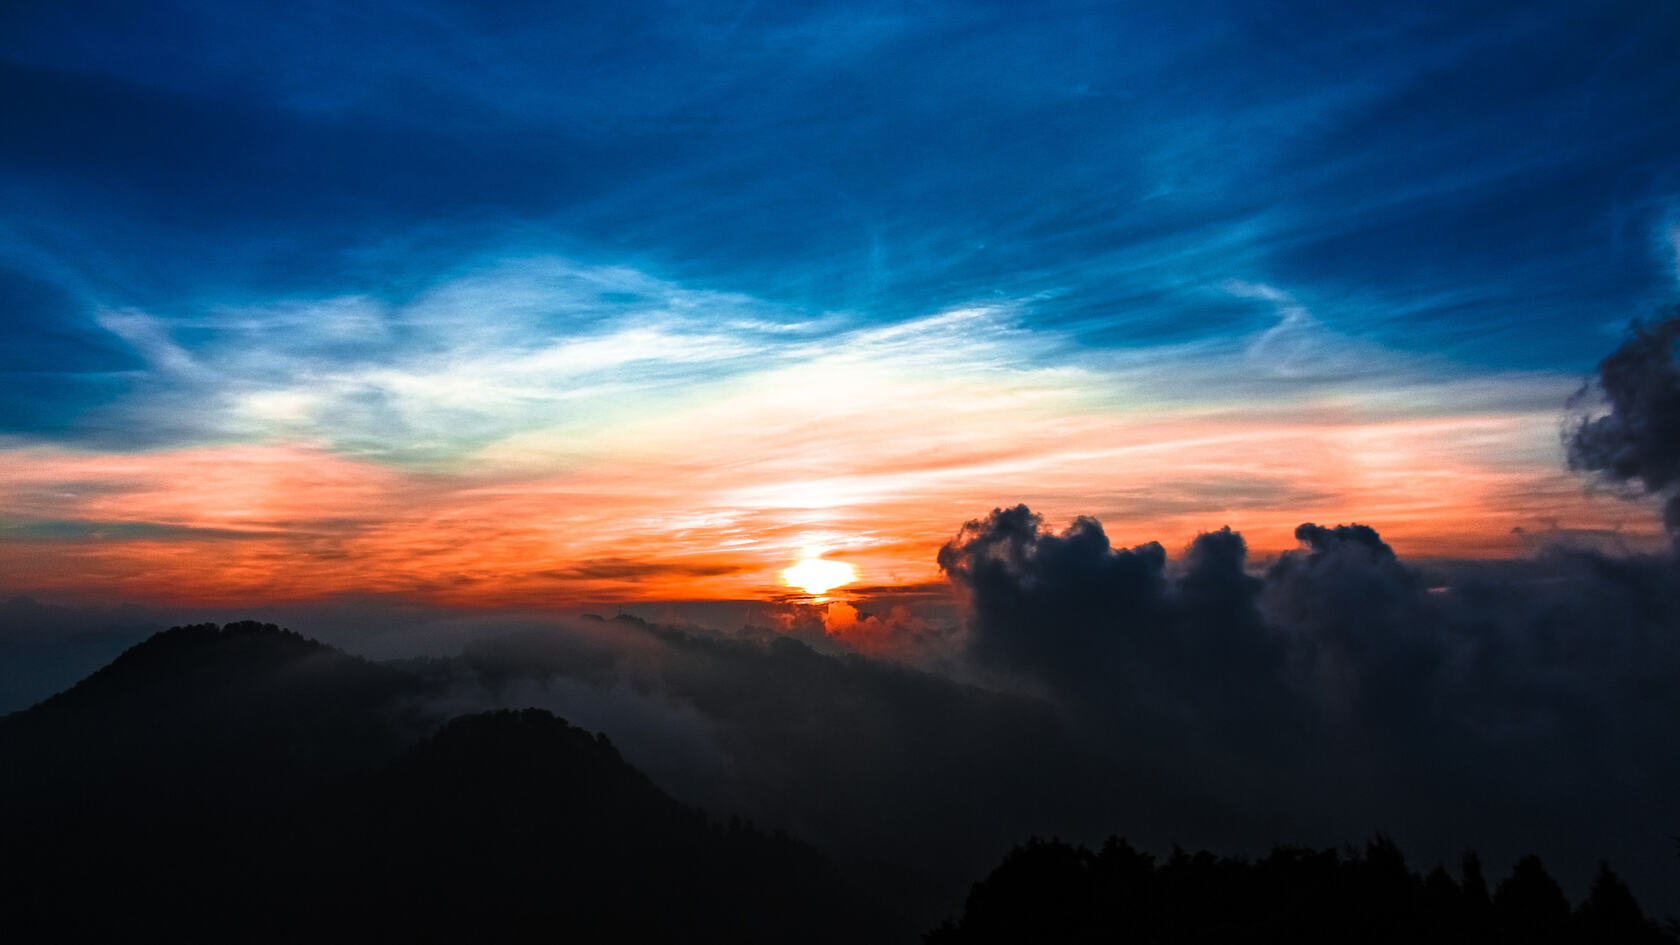 云雾妖娆的大山夕阳落下前的彩霞构成天然的风景画卷第1张图片